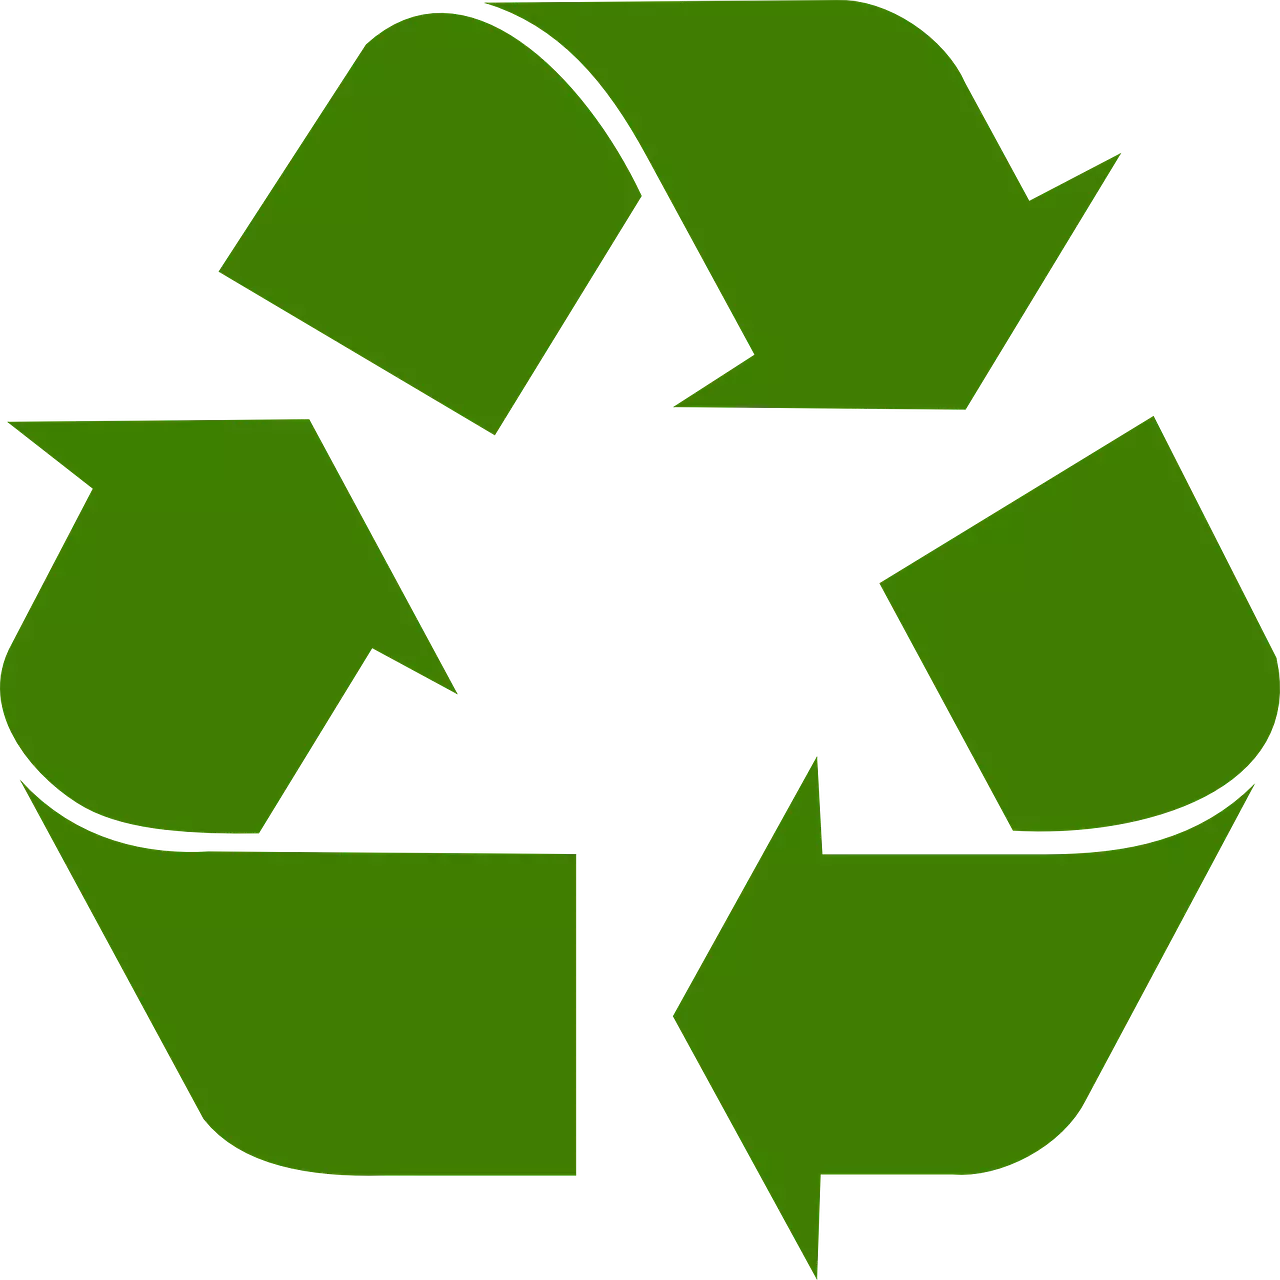 Verpackungen recyceln und die Umwelt schonen